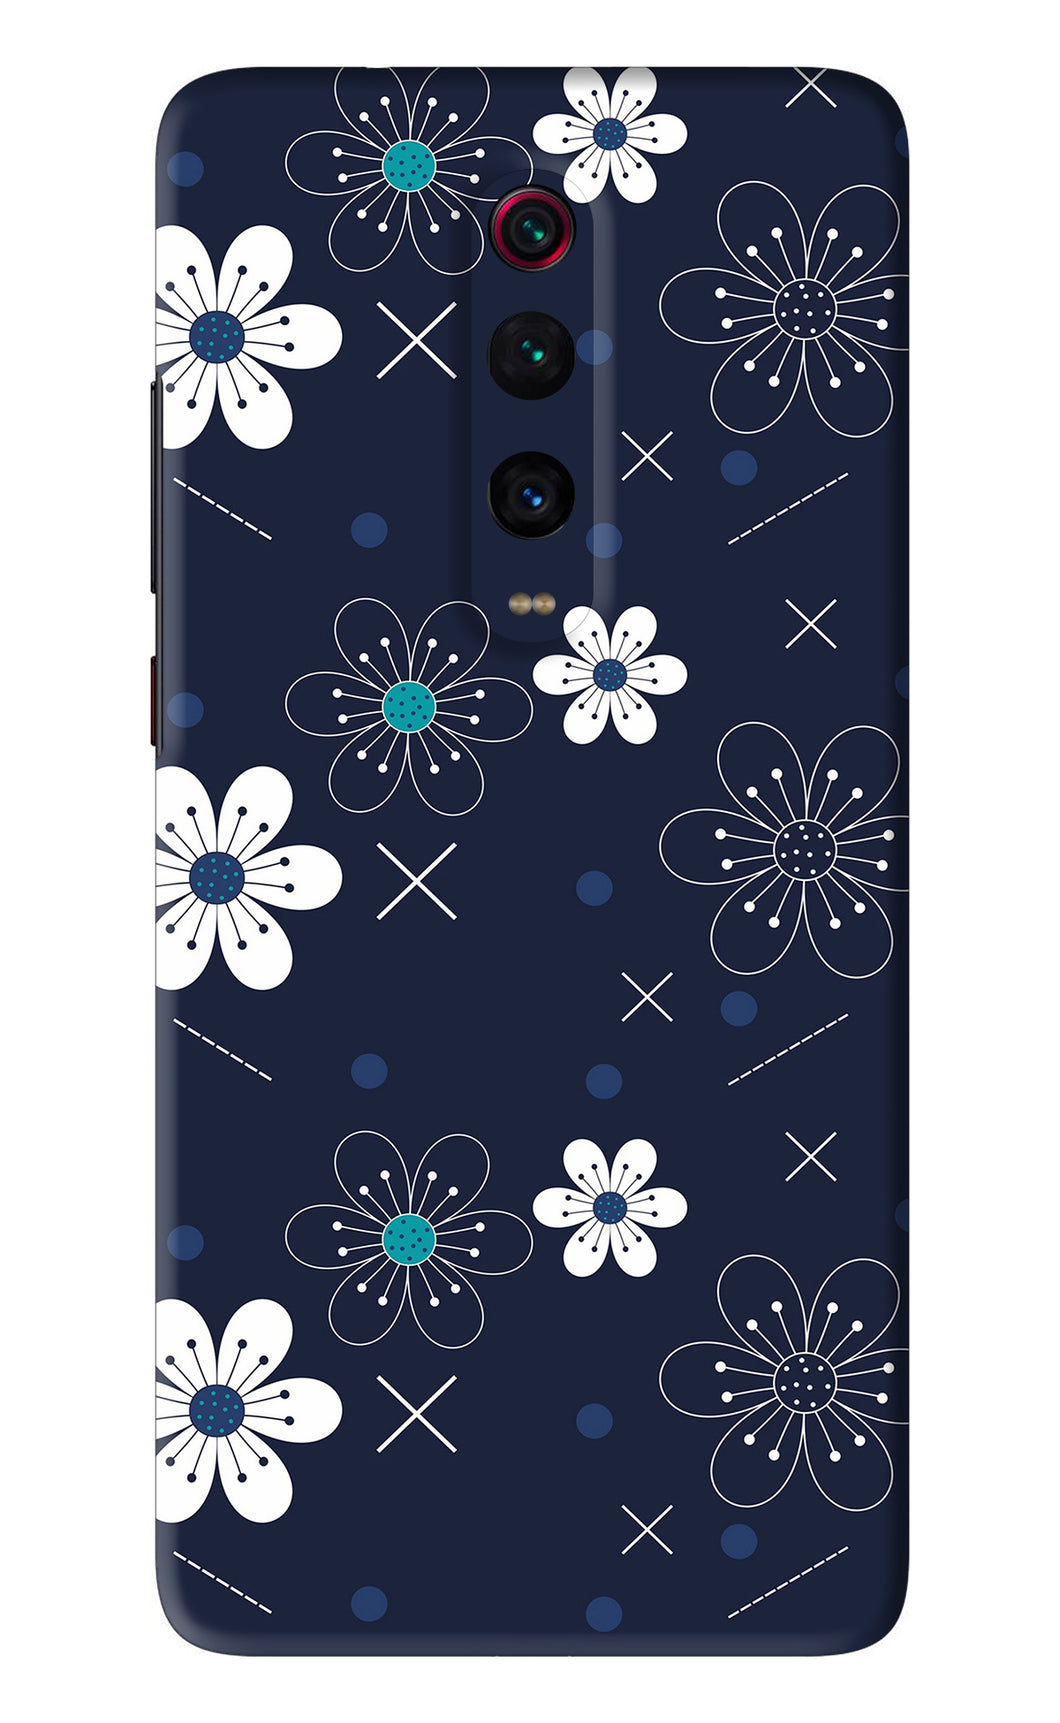 Flowers 4 Xiaomi Redmi K20 Pro Back Skin Wrap